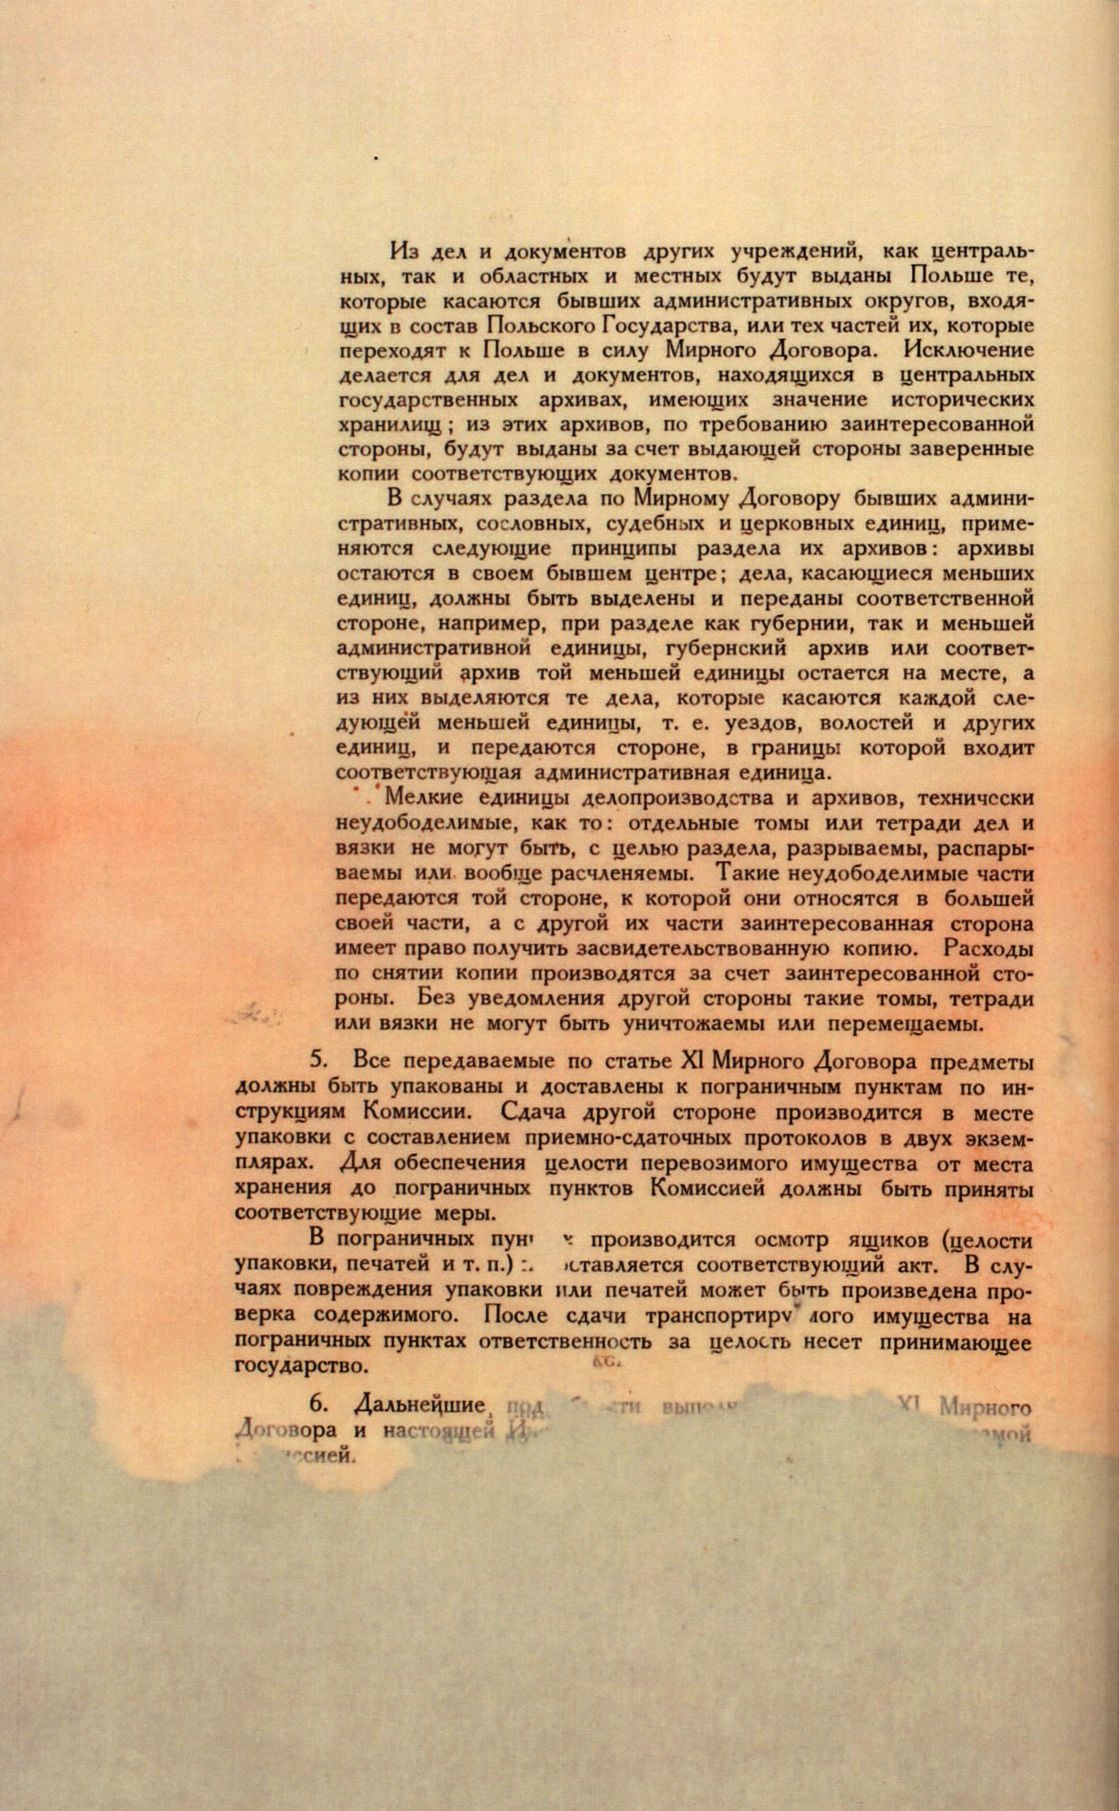 Traktat Pokoju między Polską a Rosją i Ukrainą podpisany w Rydze dnia 18 marca 1921 roku, s. 91, MSZ, sygn. 6739.